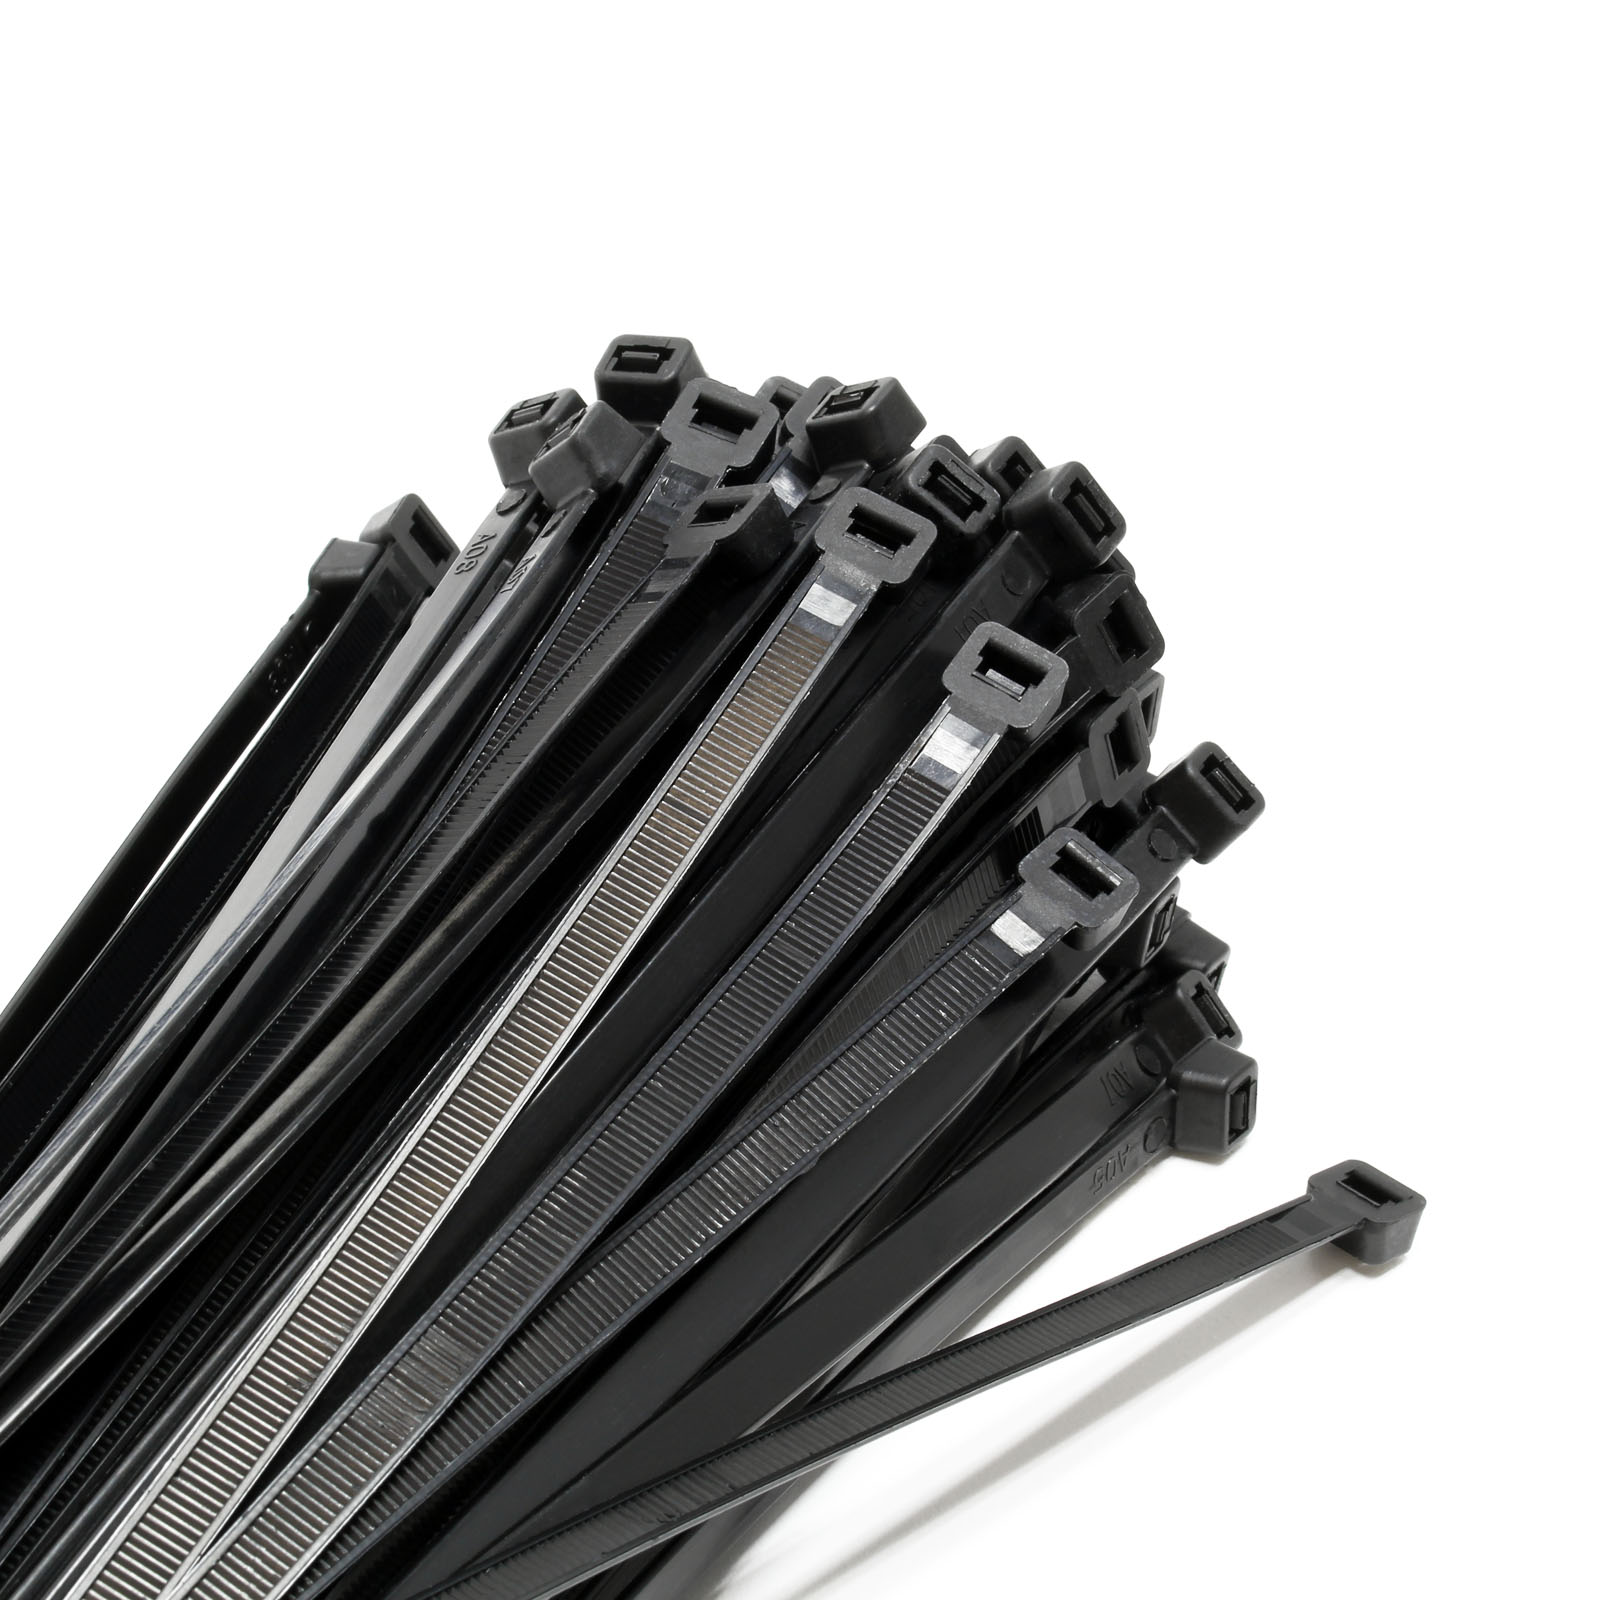 Kortpack suministra en stock +300 tamaños y varios tipos de bridas para  cables. ¡Ordene aqui!